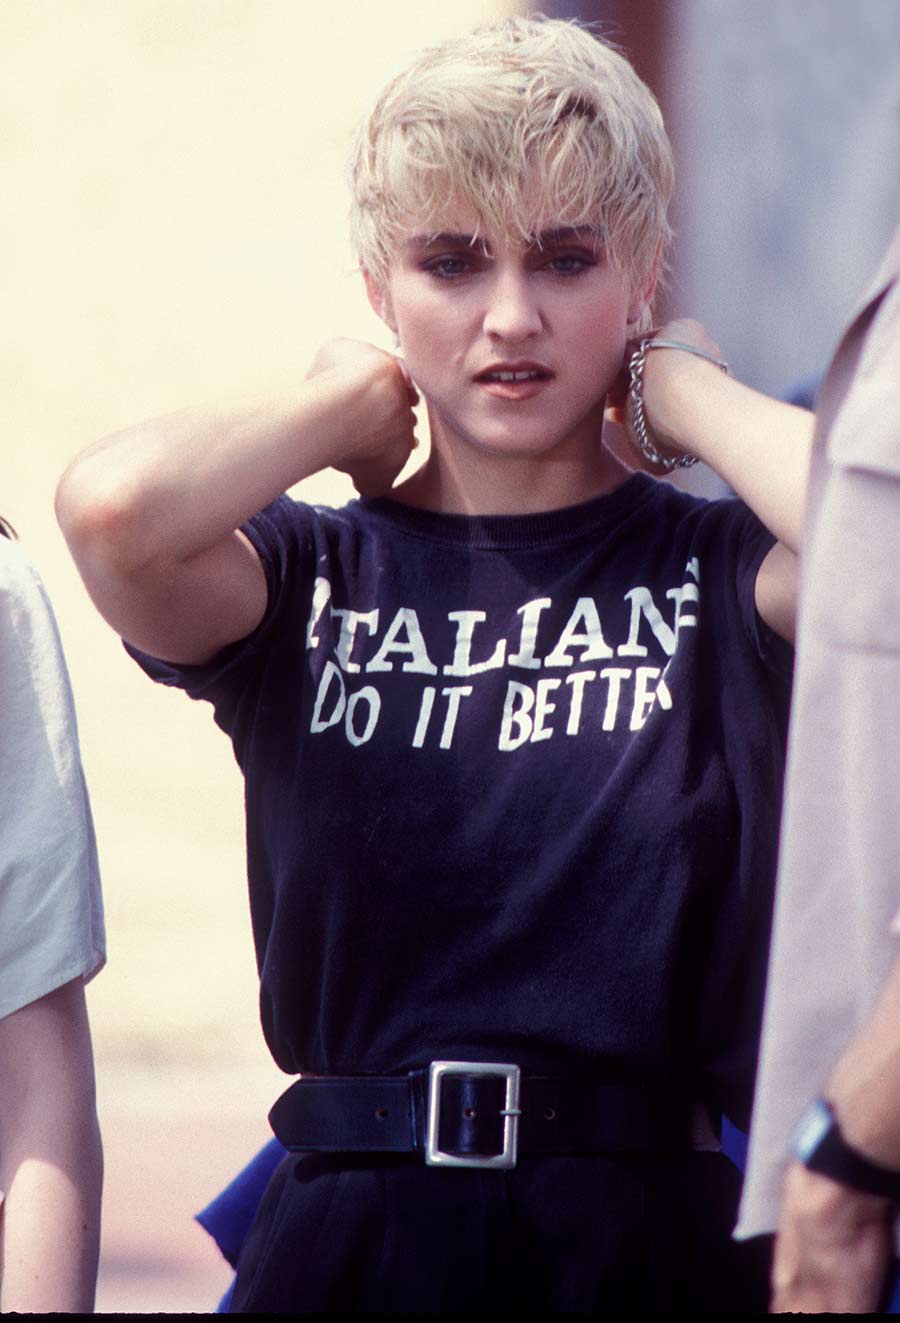 Prendas y accesorios en tendencia que Madonna ya lucía desde los 80s y 90s